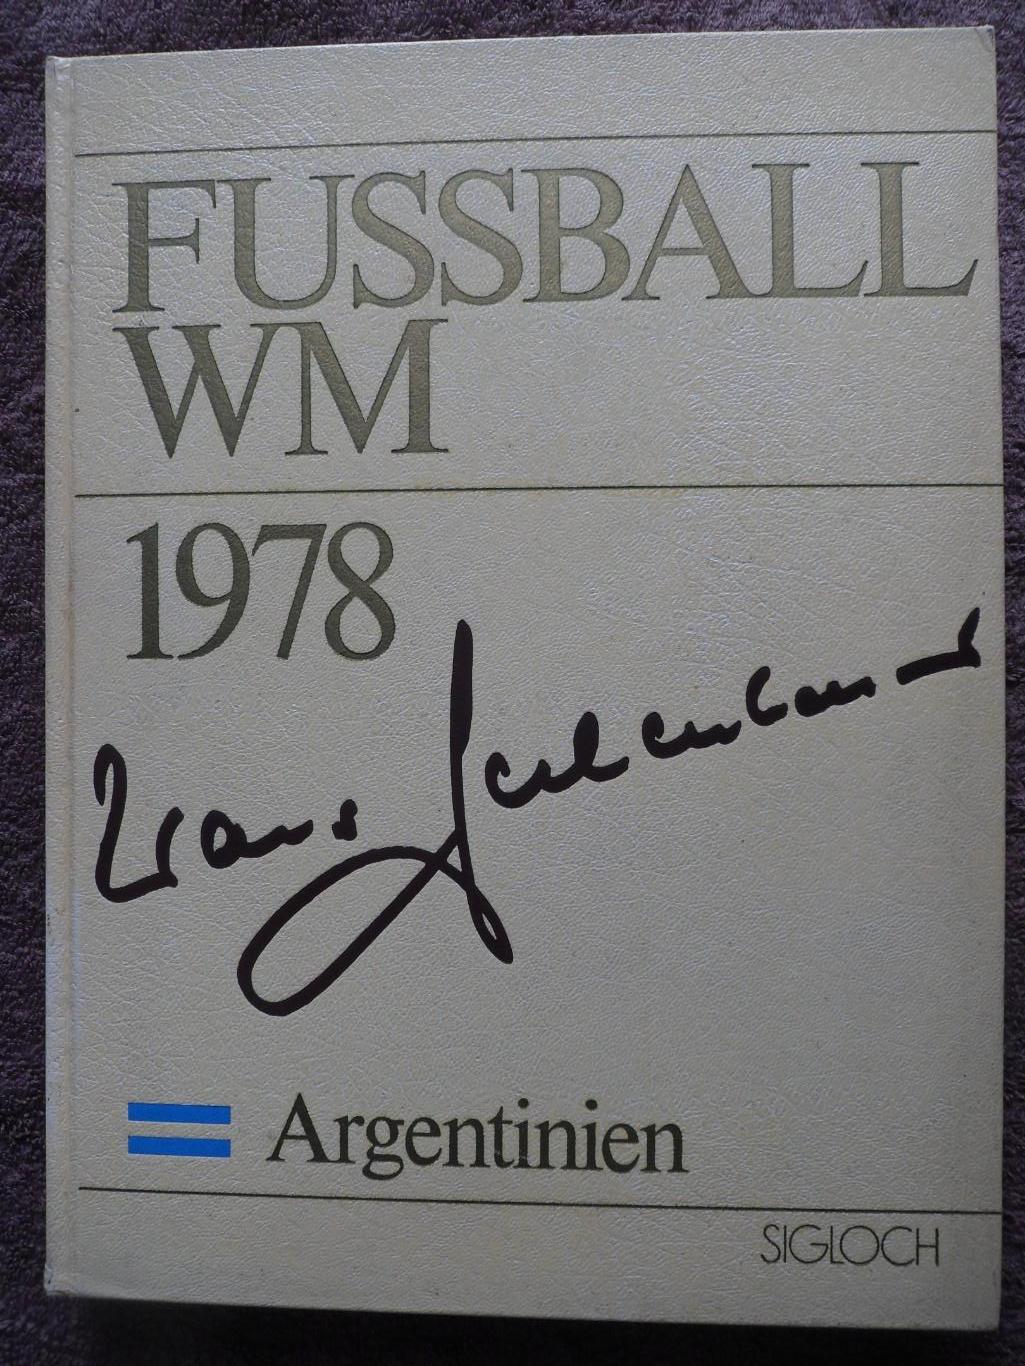 Ф.Беккенбауэр - фотоальбом Чемпионат мира по футболу 1978 (фото команд)+автограф